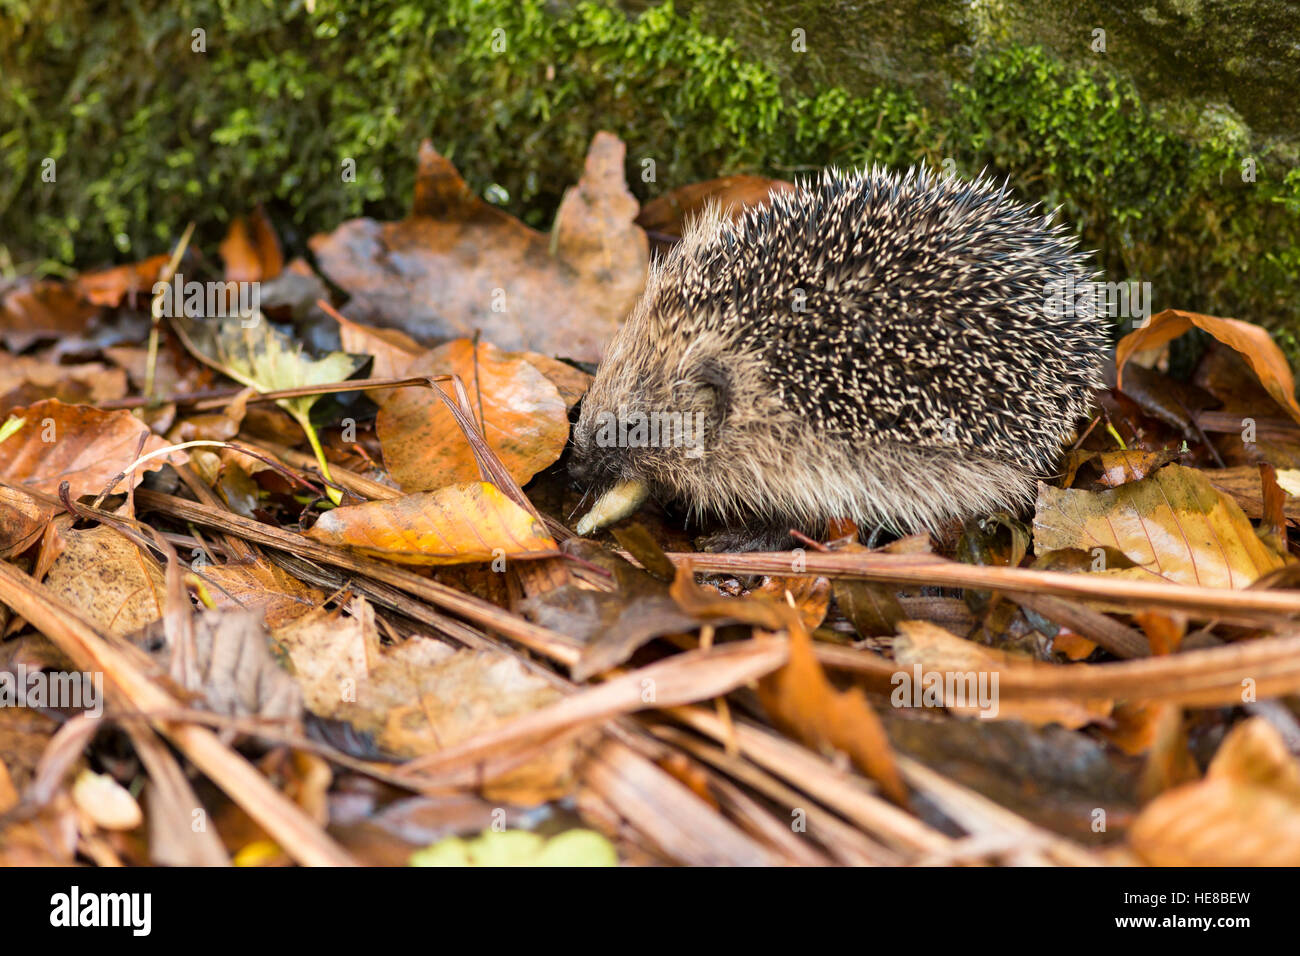 young juvenile hedgehog eating slug in autumn leaf litter Stock Photo